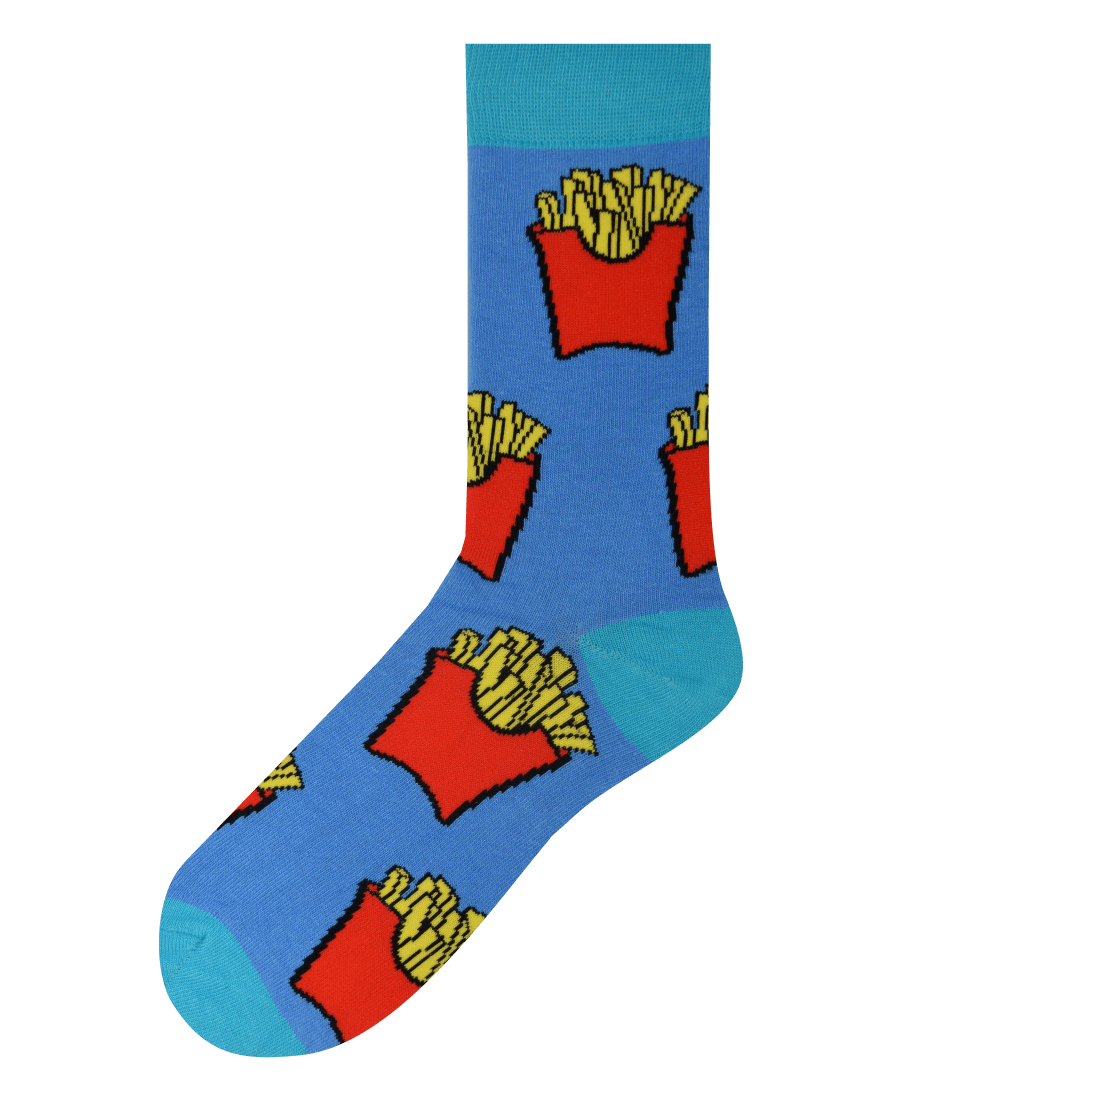 Medias Locas calcetines divertidos de diseño desigual Freaky Socks. Medias disparejas